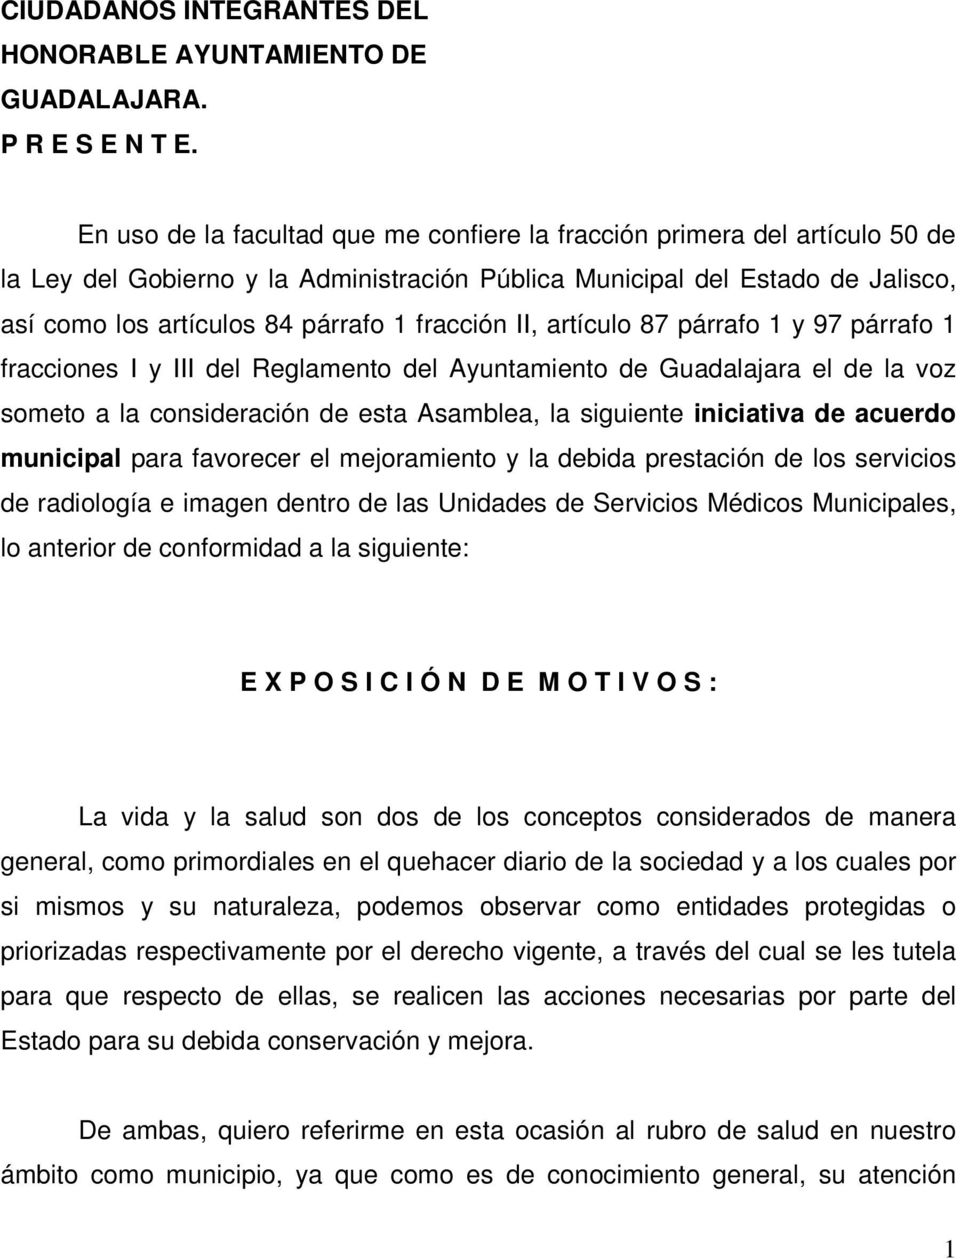 fracción II, artículo 87 párrafo 1 y 97 párrafo 1 fracciones I y III del Reglamento del Ayuntamiento de Guadalajara el de la voz someto a la consideración de esta Asamblea, la siguiente iniciativa de